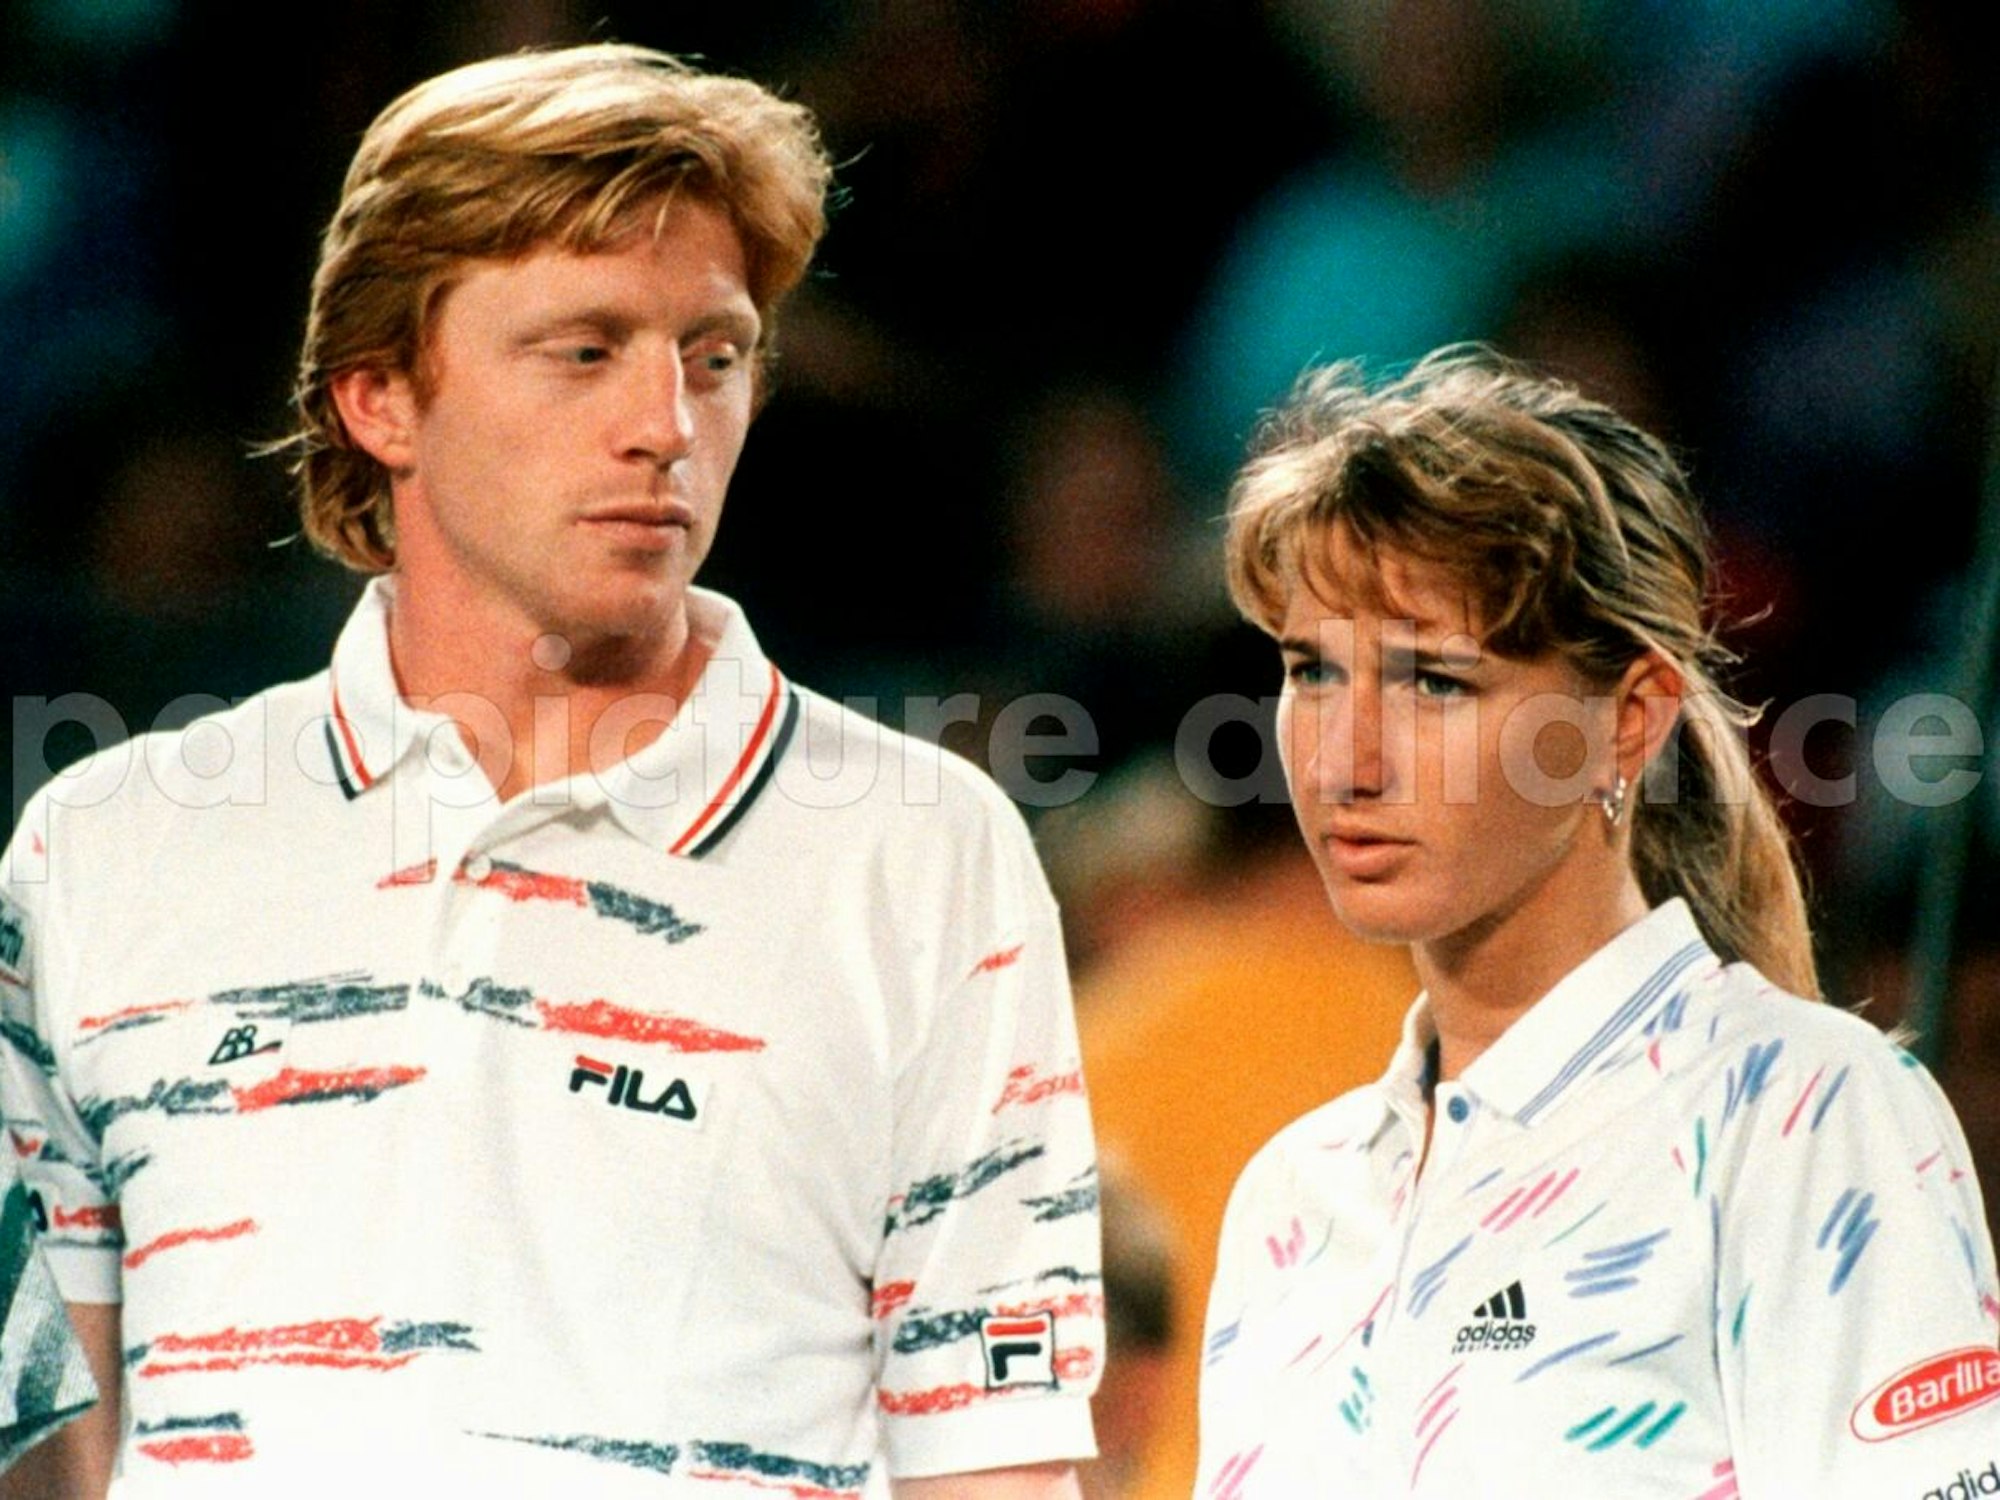 Boris Becker und Steffi Graf waren DAS deutsche Sport-Duo der späten 80er und der 90er-Jahre. Das Bild zeigt sie nach ihrem ersten gemischten Doppel am 1.1.1992 in Perth, das mit einer Niederlage endete. 1999 trat Boris Becker vom Profisport zurück, sechs Wochen vor Steffi Graf.